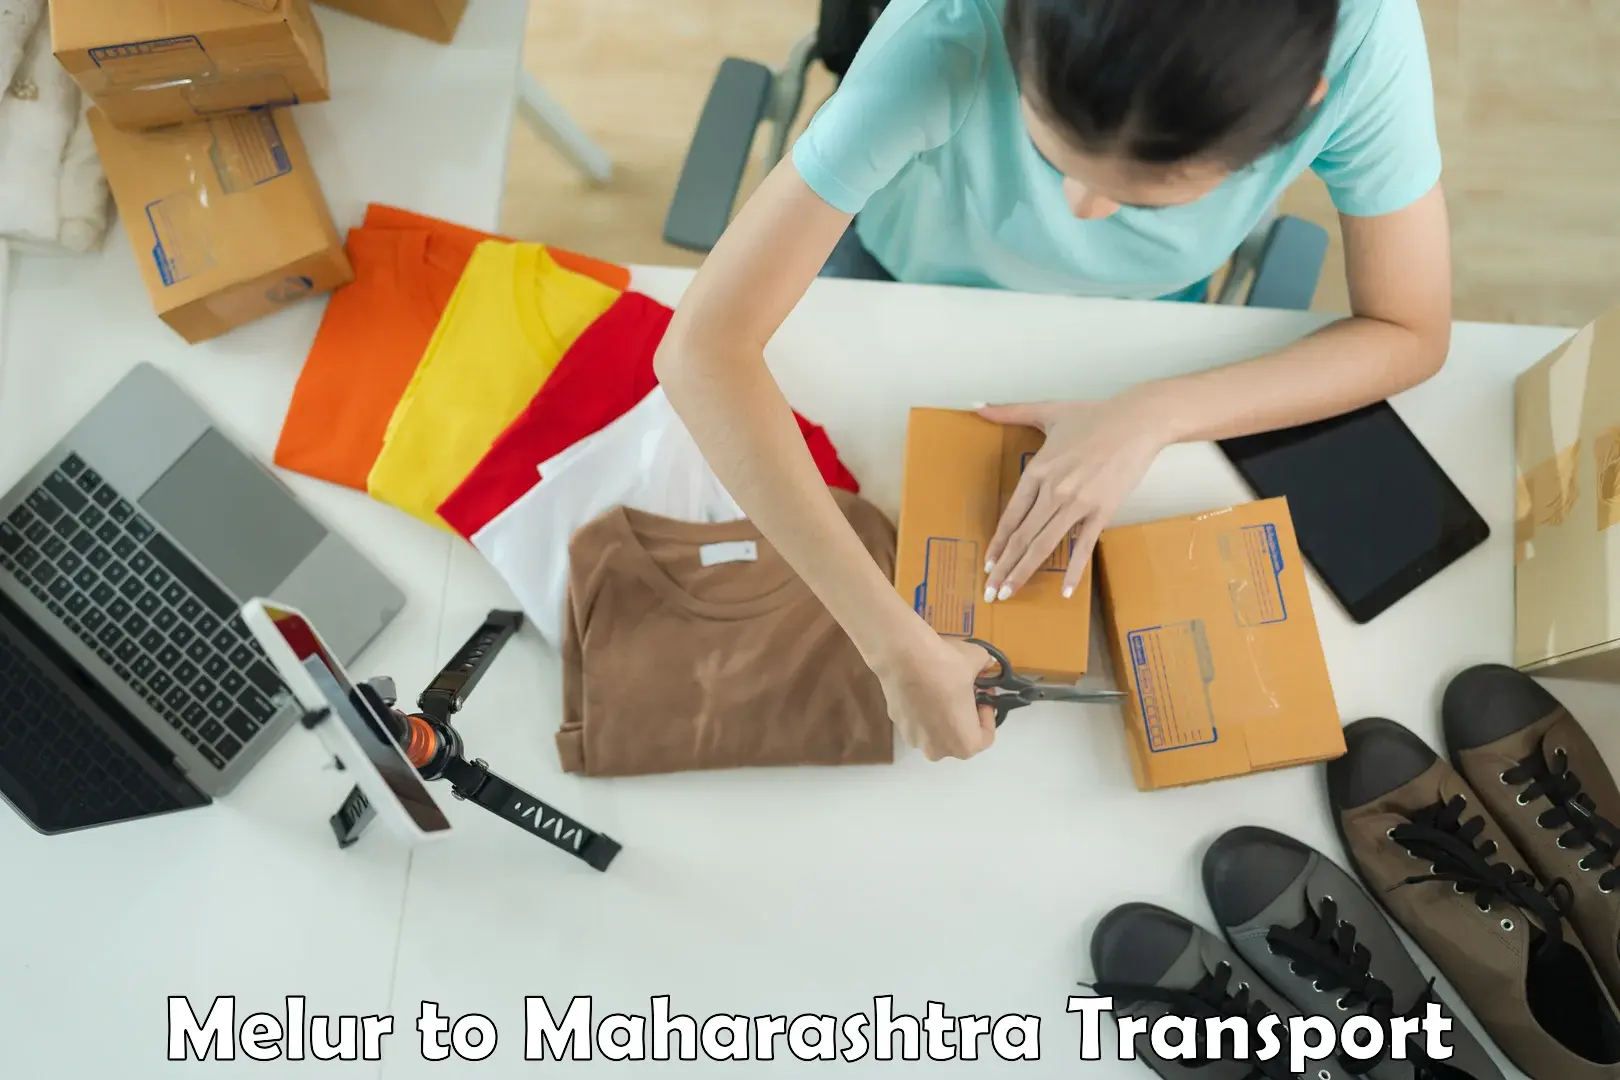 Furniture transport service Melur to Umarkhed